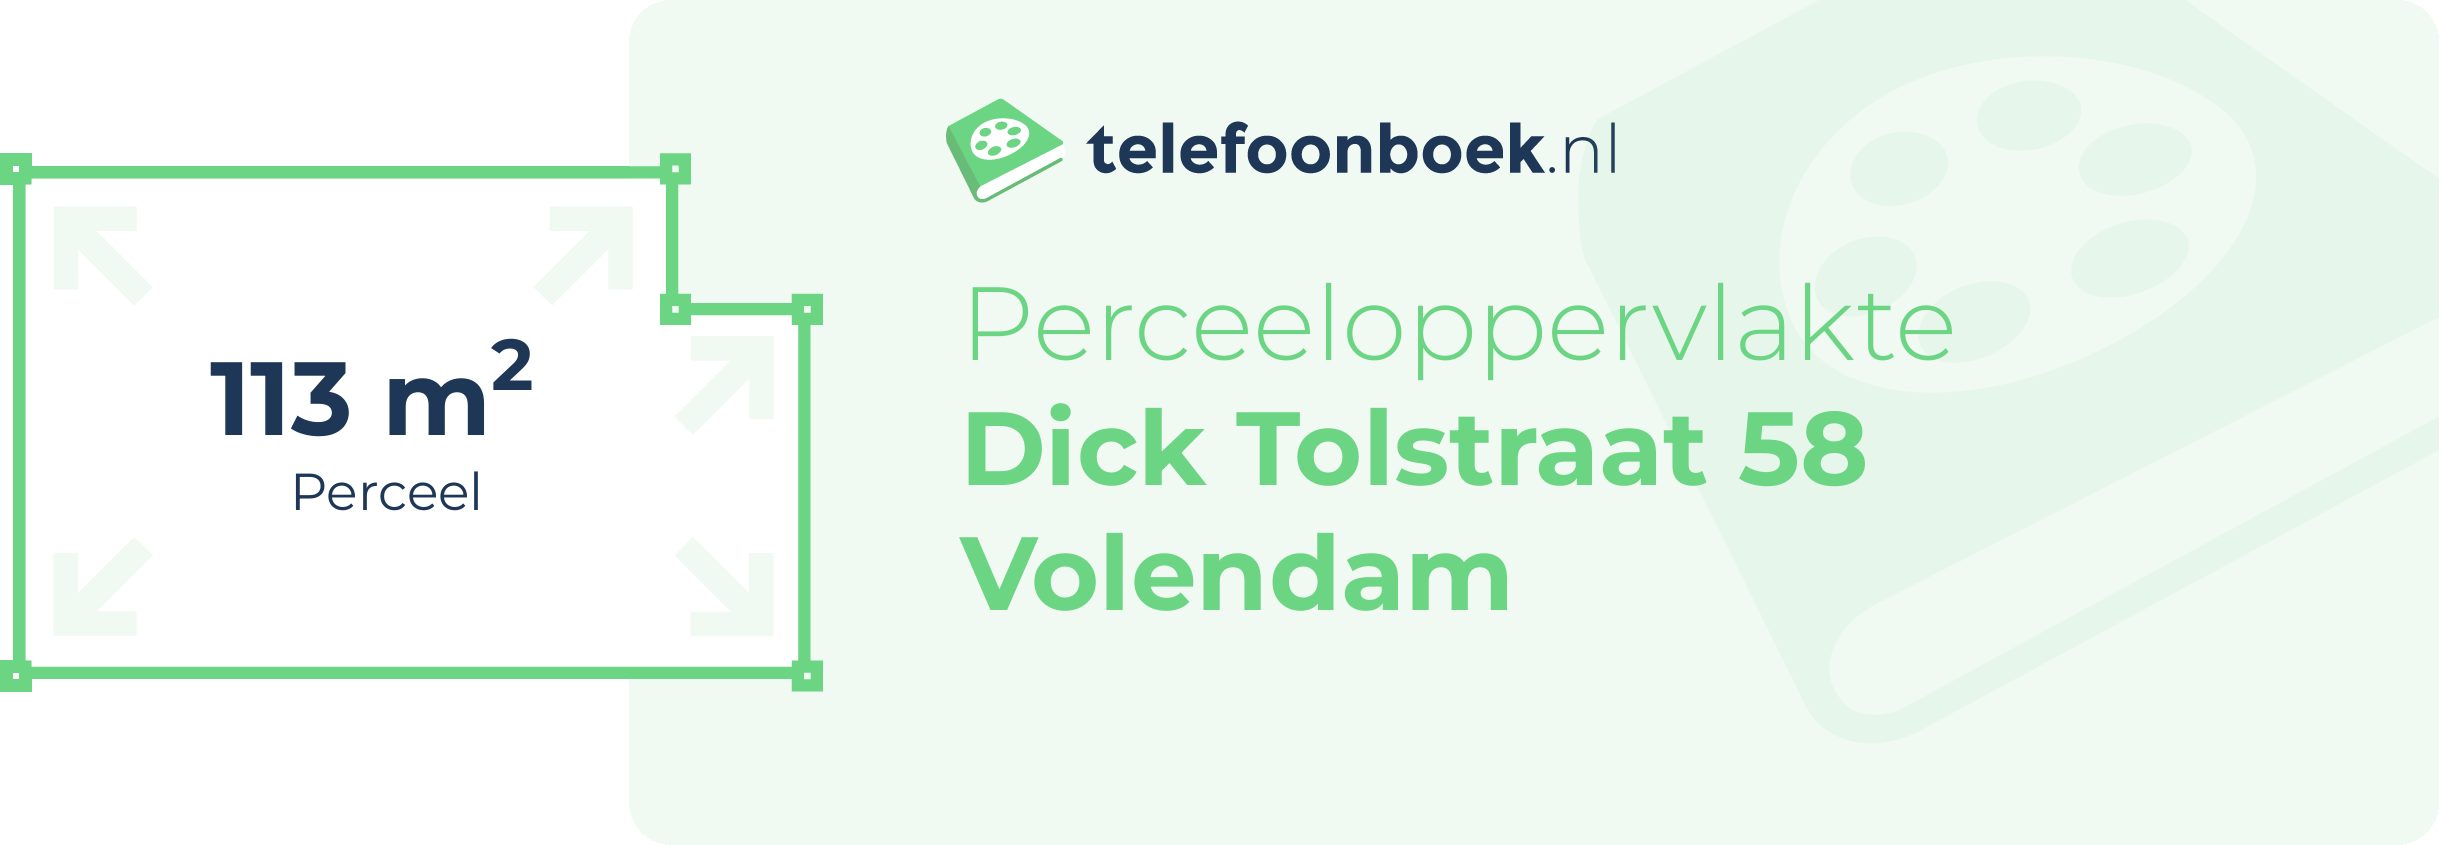 Perceeloppervlakte Dick Tolstraat 58 Volendam